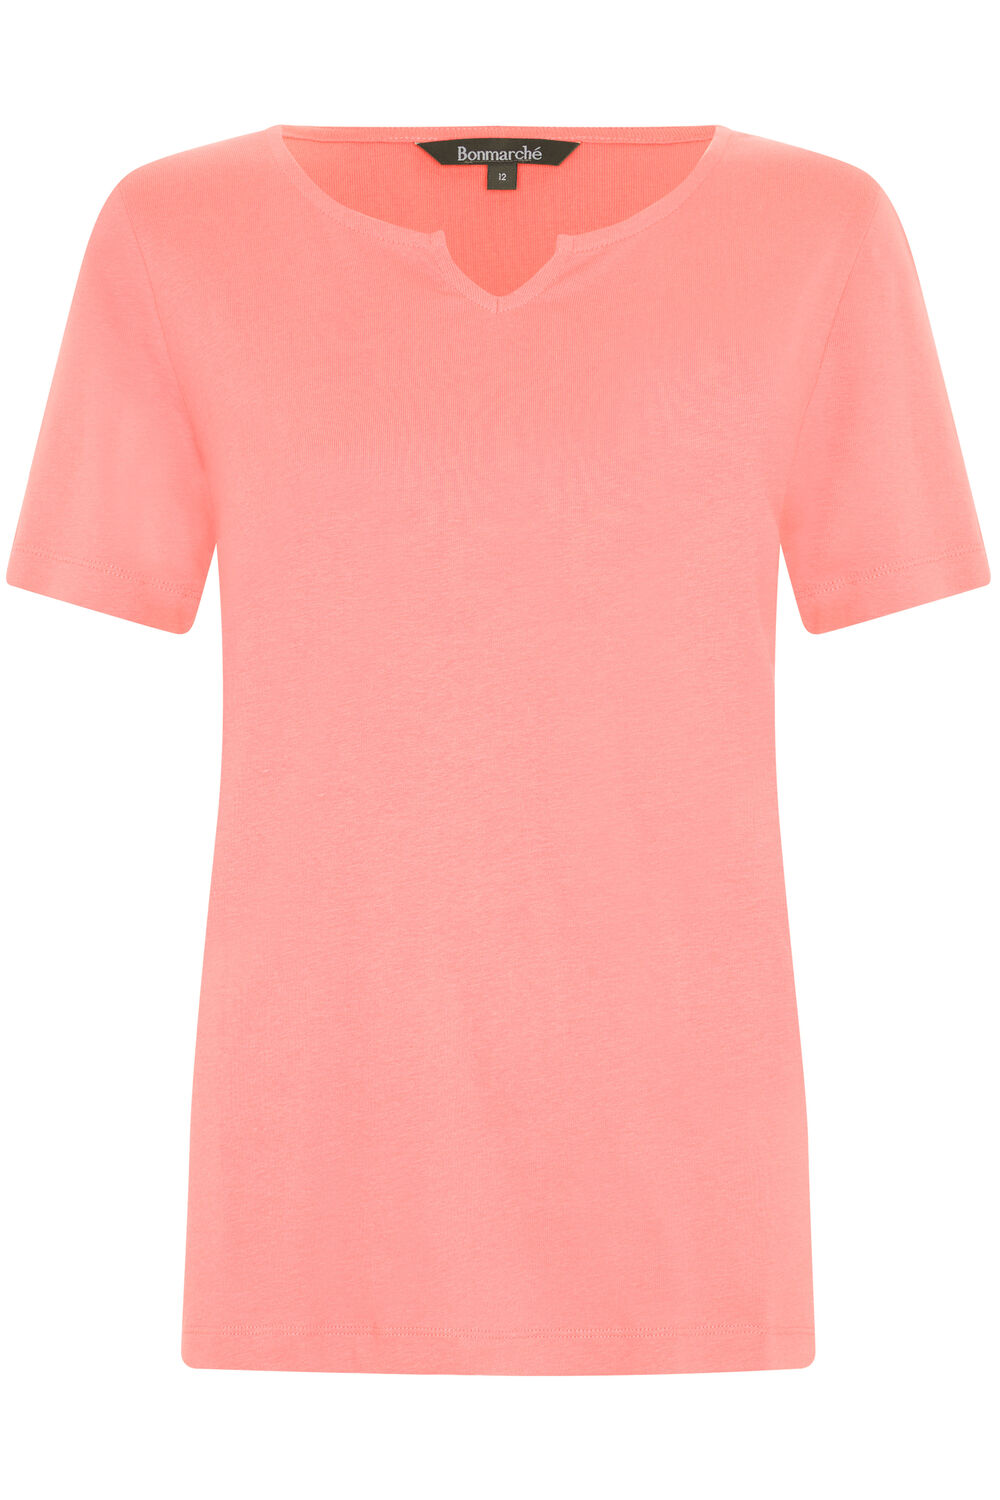 Bonmarche Coral Short Sleeve Plain Notch Neck T-Shirt, Size: 20